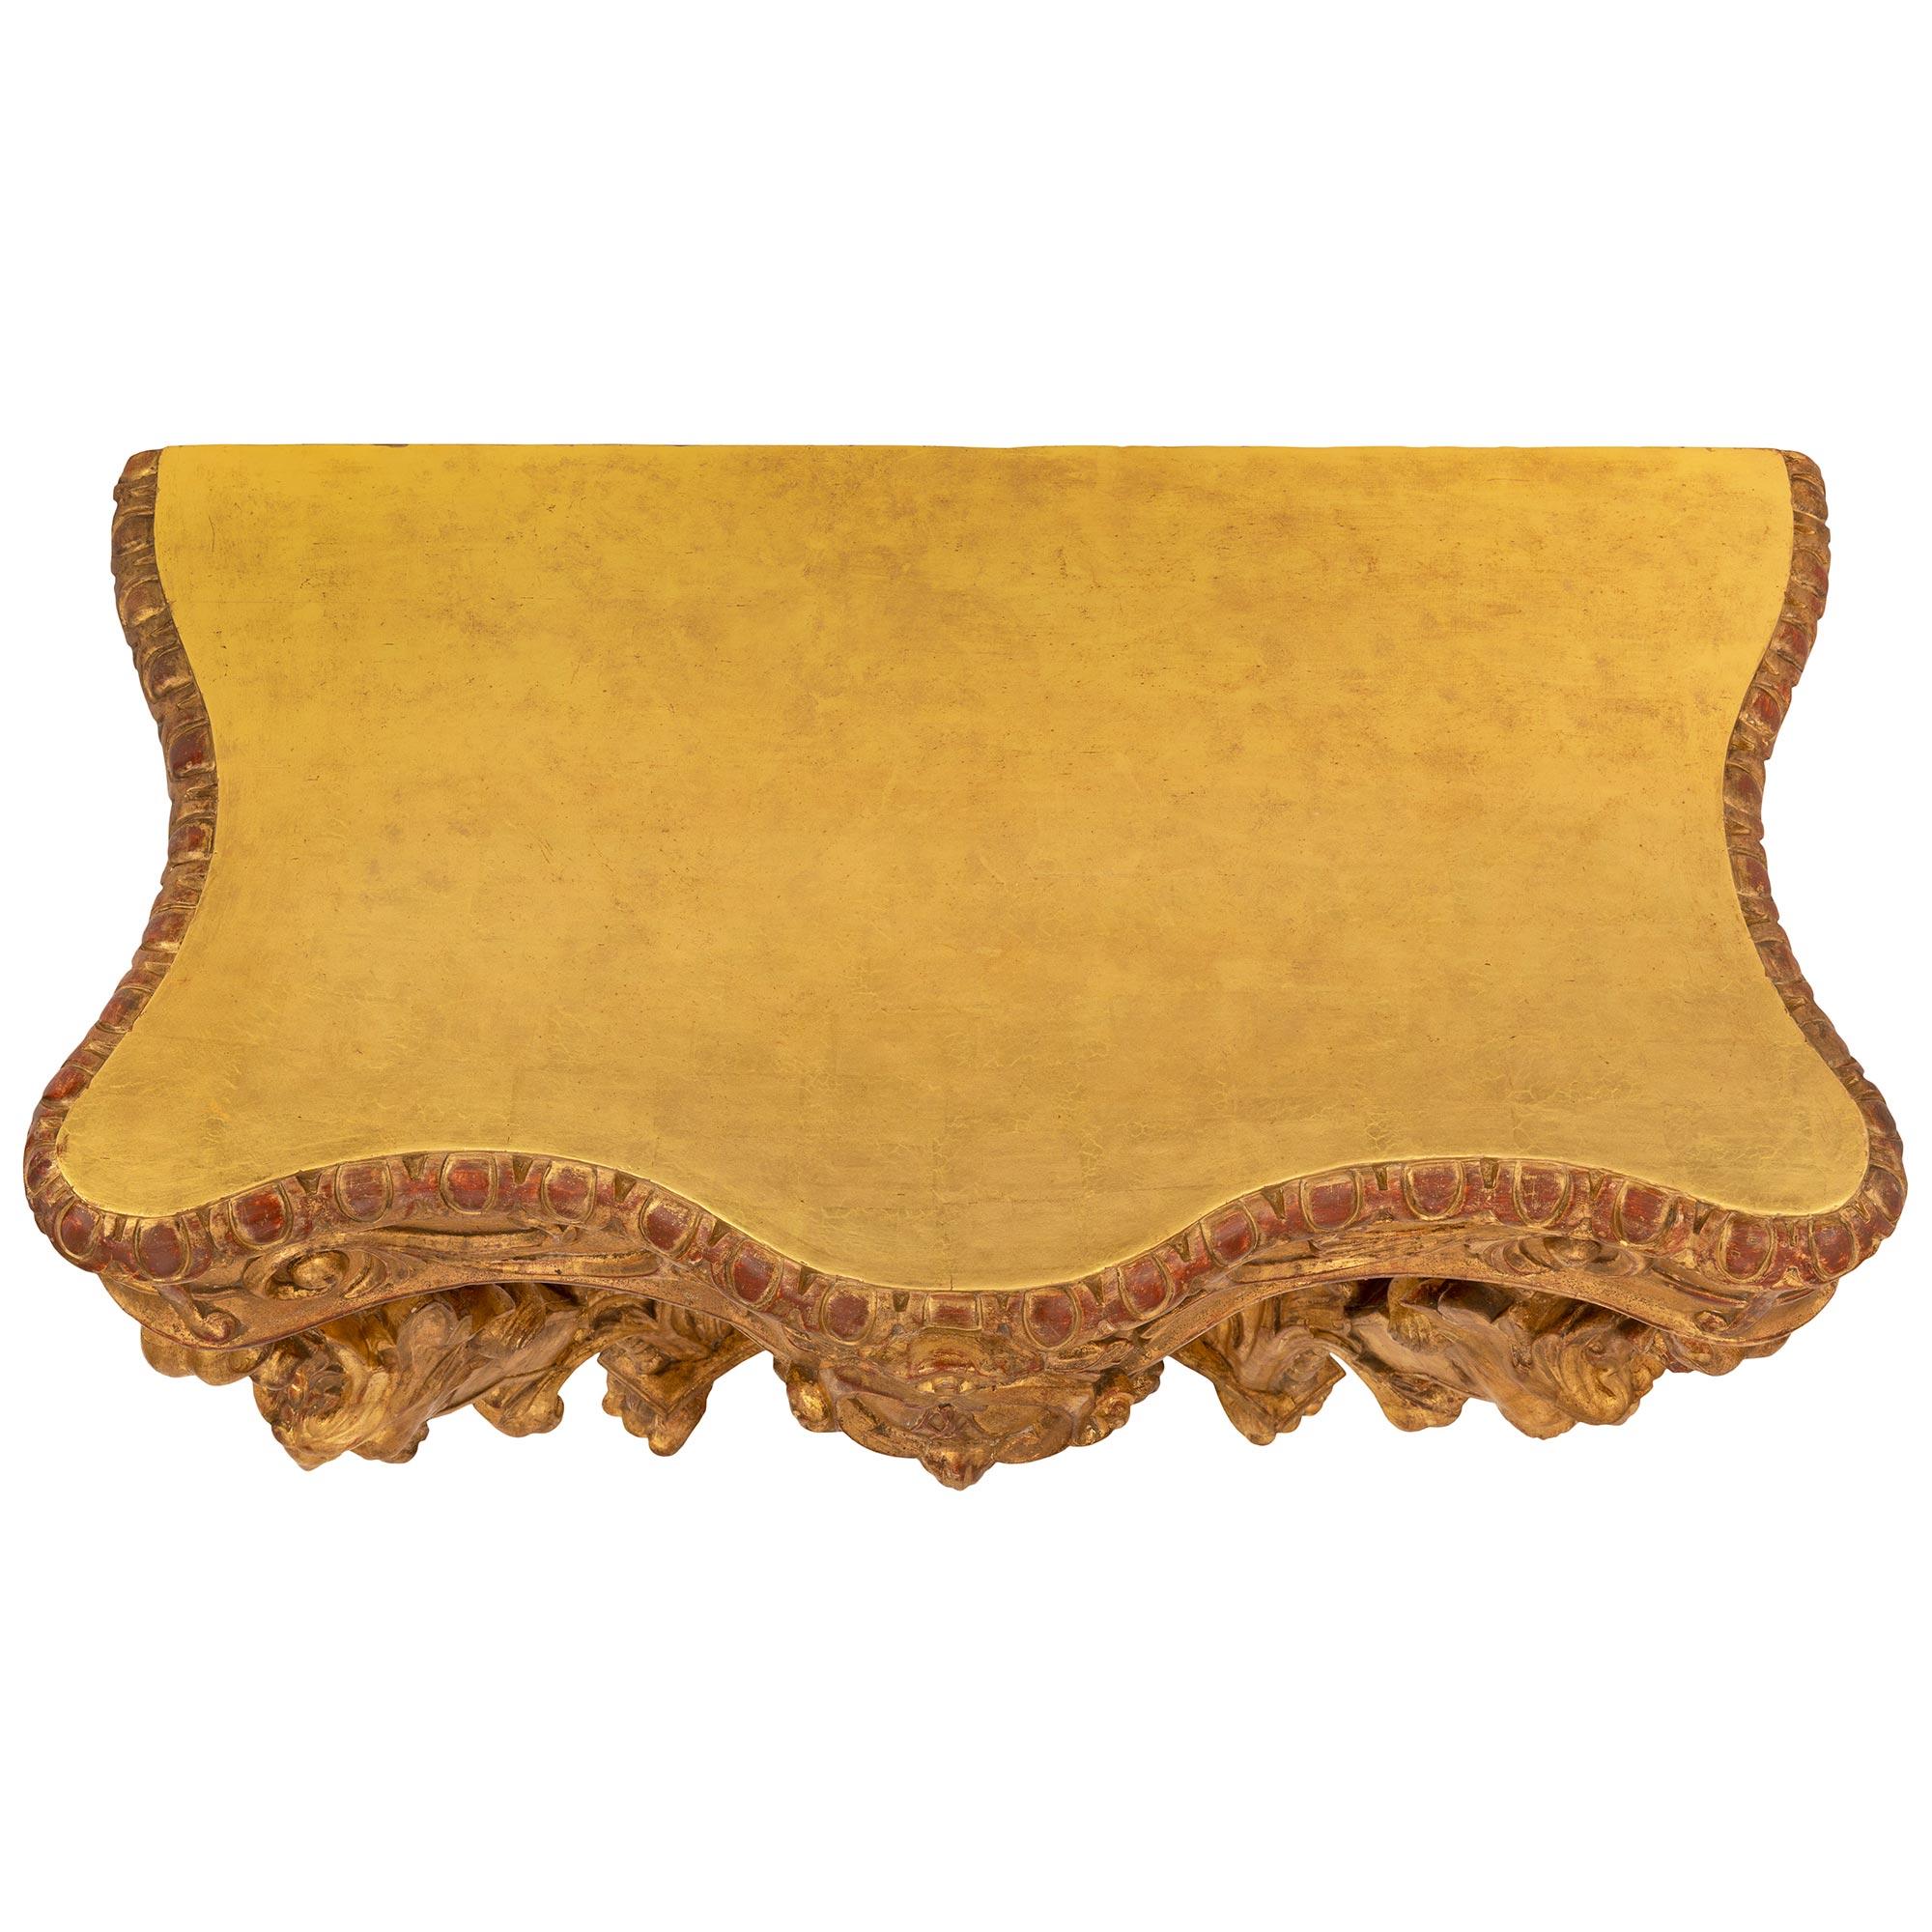 Eine hübsche italienische Konsole aus vergoldetem Barockholz aus dem 19. Die Konsole steht auf außergewöhnlichen Tatzenfüßen unter einzigartig geschwungenen Beinen, die mit reich geschnitzten, bärtigen Satyrn und schönen Blattmustern verziert sind